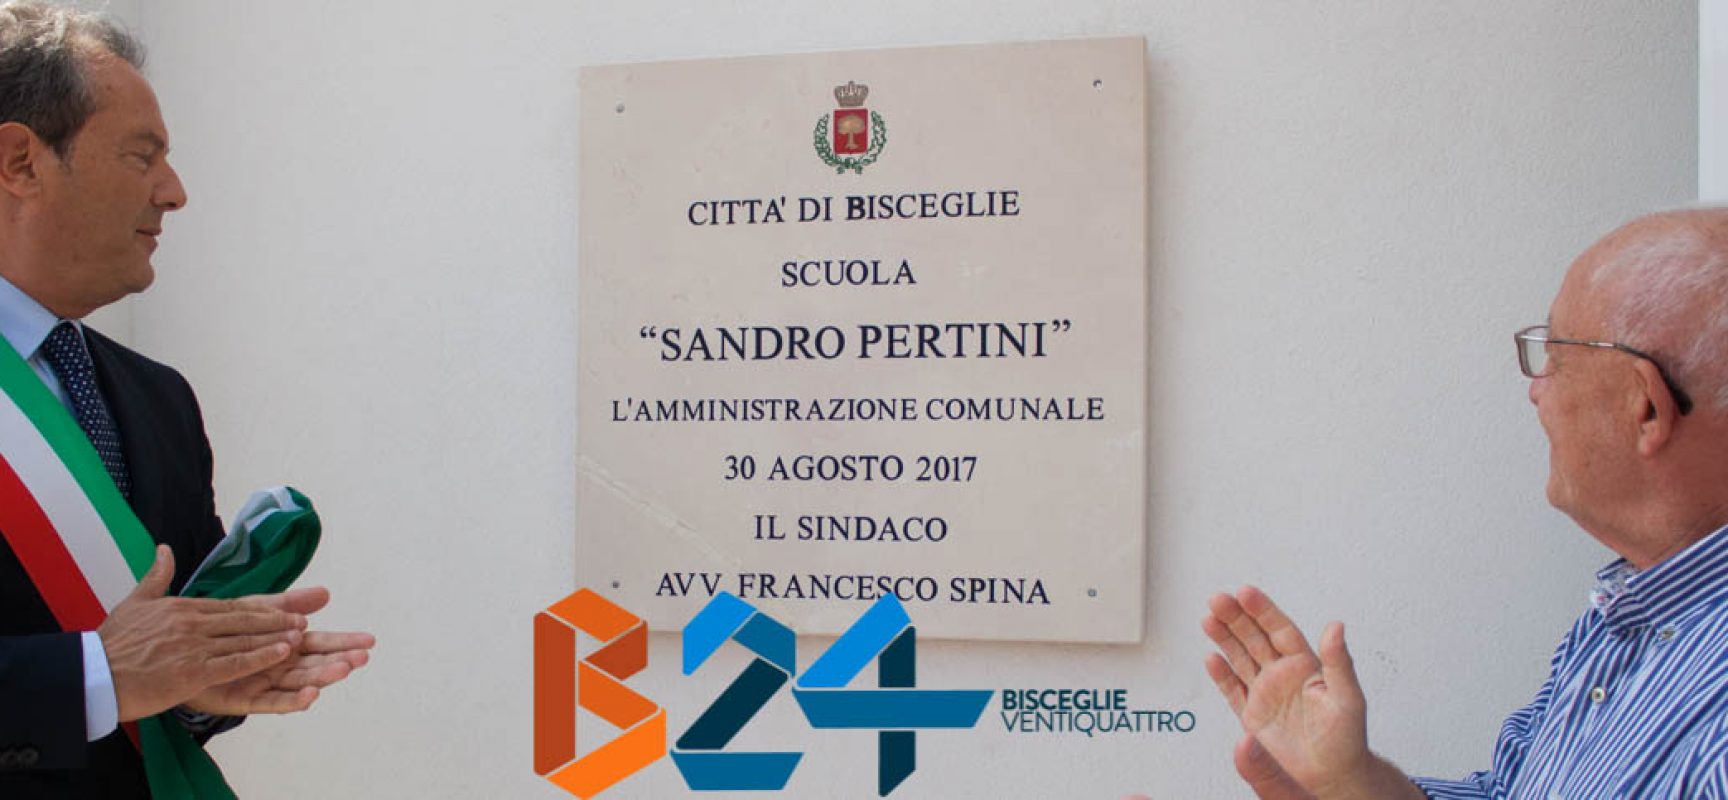 Inaugurata scuola materna zona 167: edificio unico in Italia / FOTO